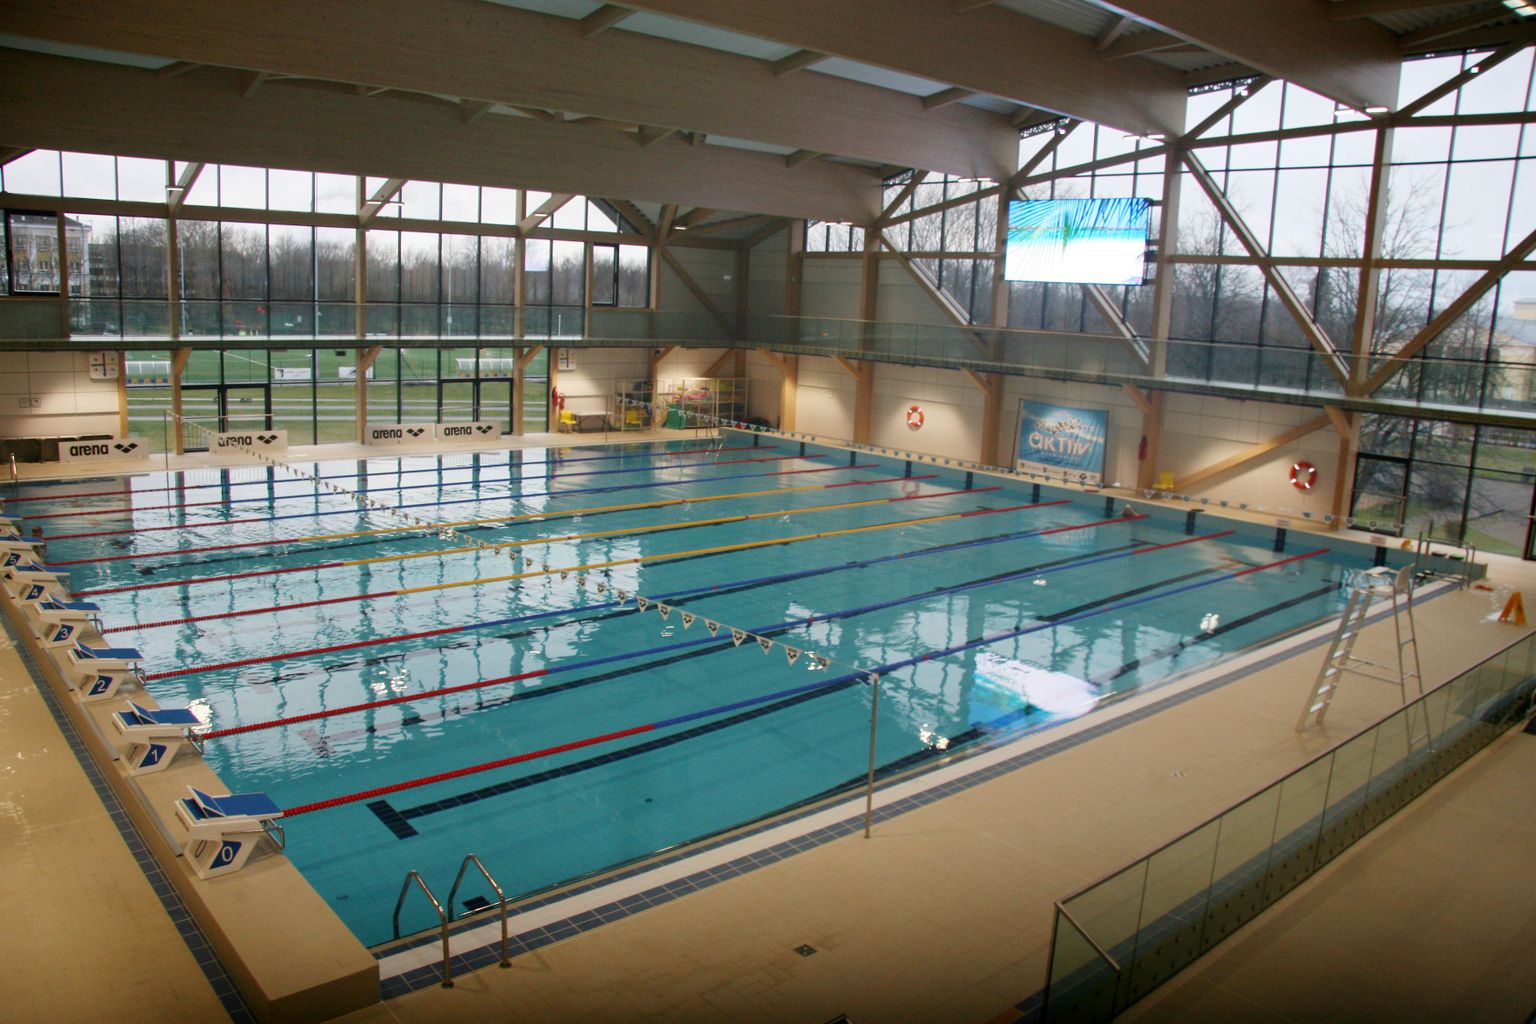 Спортивный центр "Wiru" с бассейном - одно из самых внушительных зданий Кохтла-Ярве, построенных в этом столетии. Однако город в затруднении также с погашением займов, взятых для этой цели, а на содержание центра нужны дополнительные расходы.